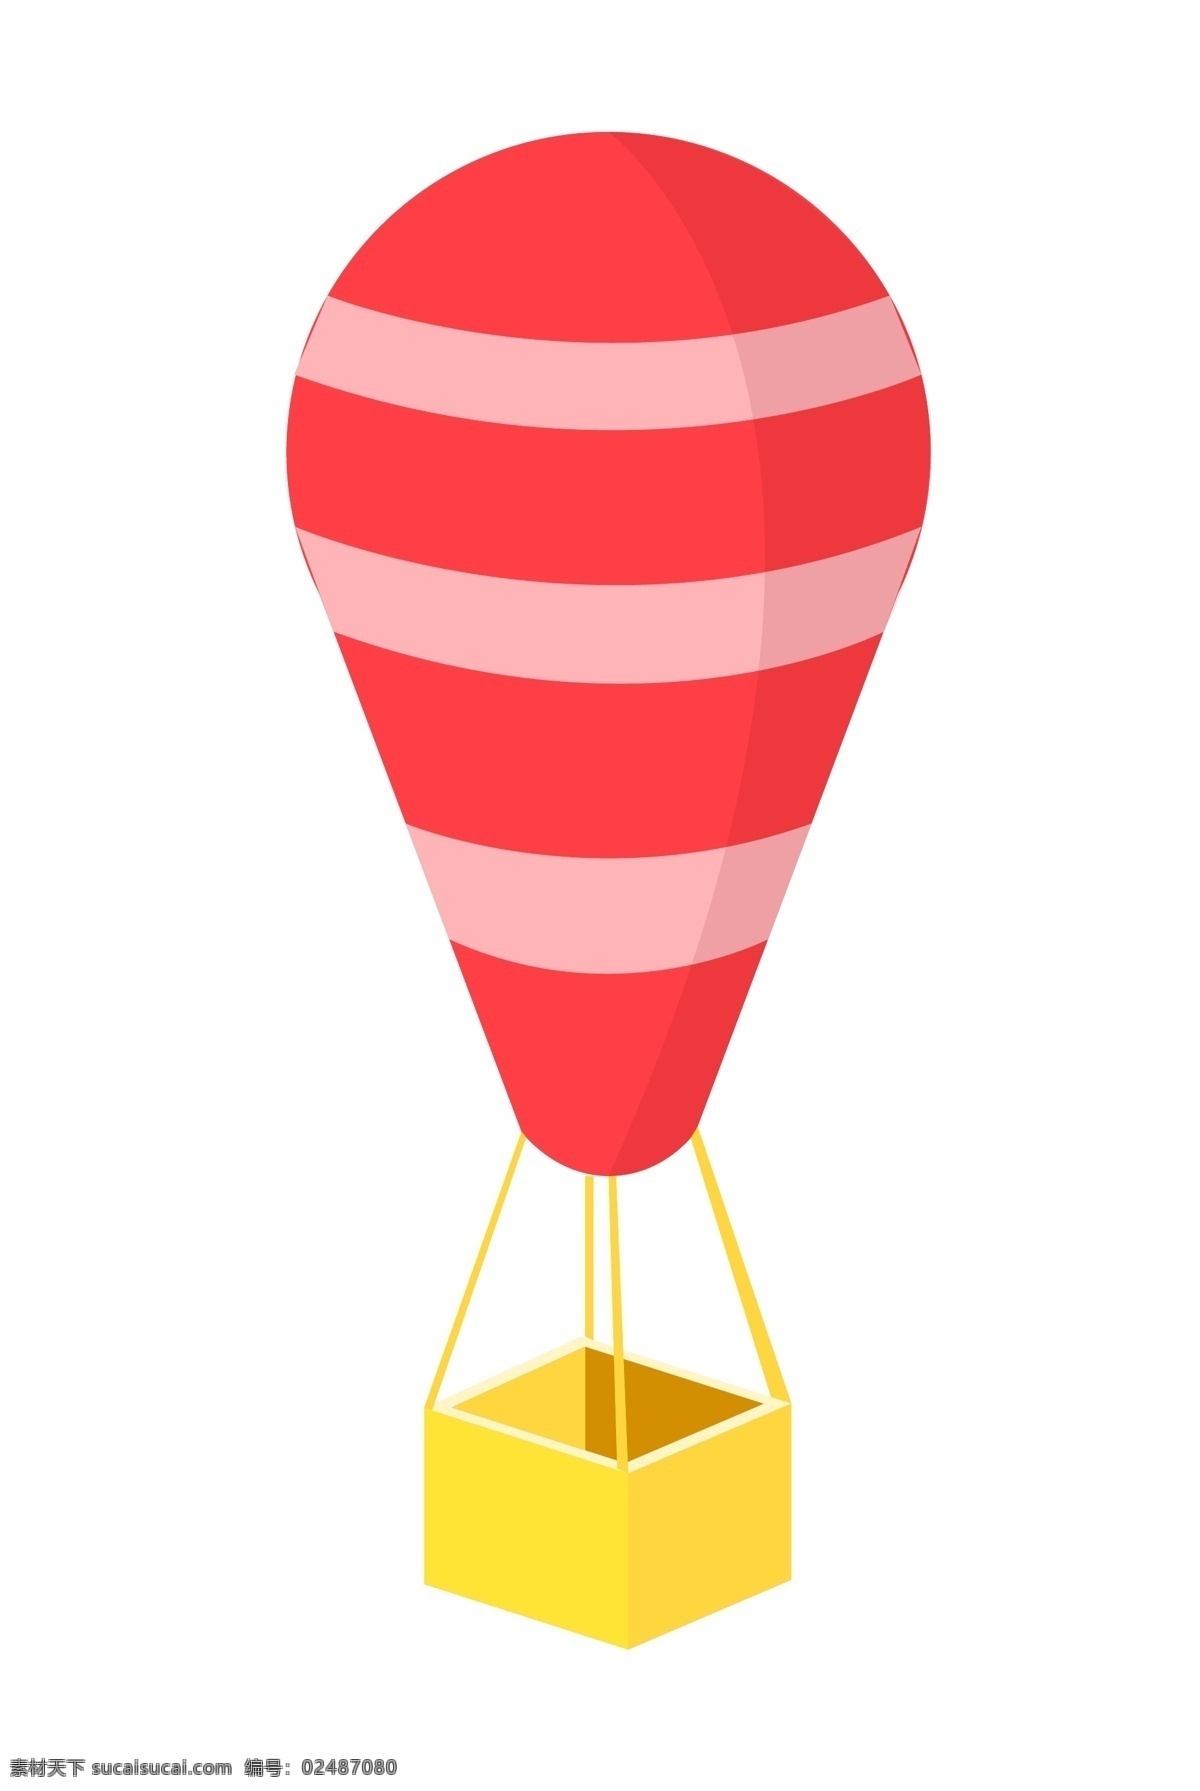 红色 热气球 插画 红色的热气球 热气球装饰 热气球插画 立体热气球 卡通热气球 创意热气球